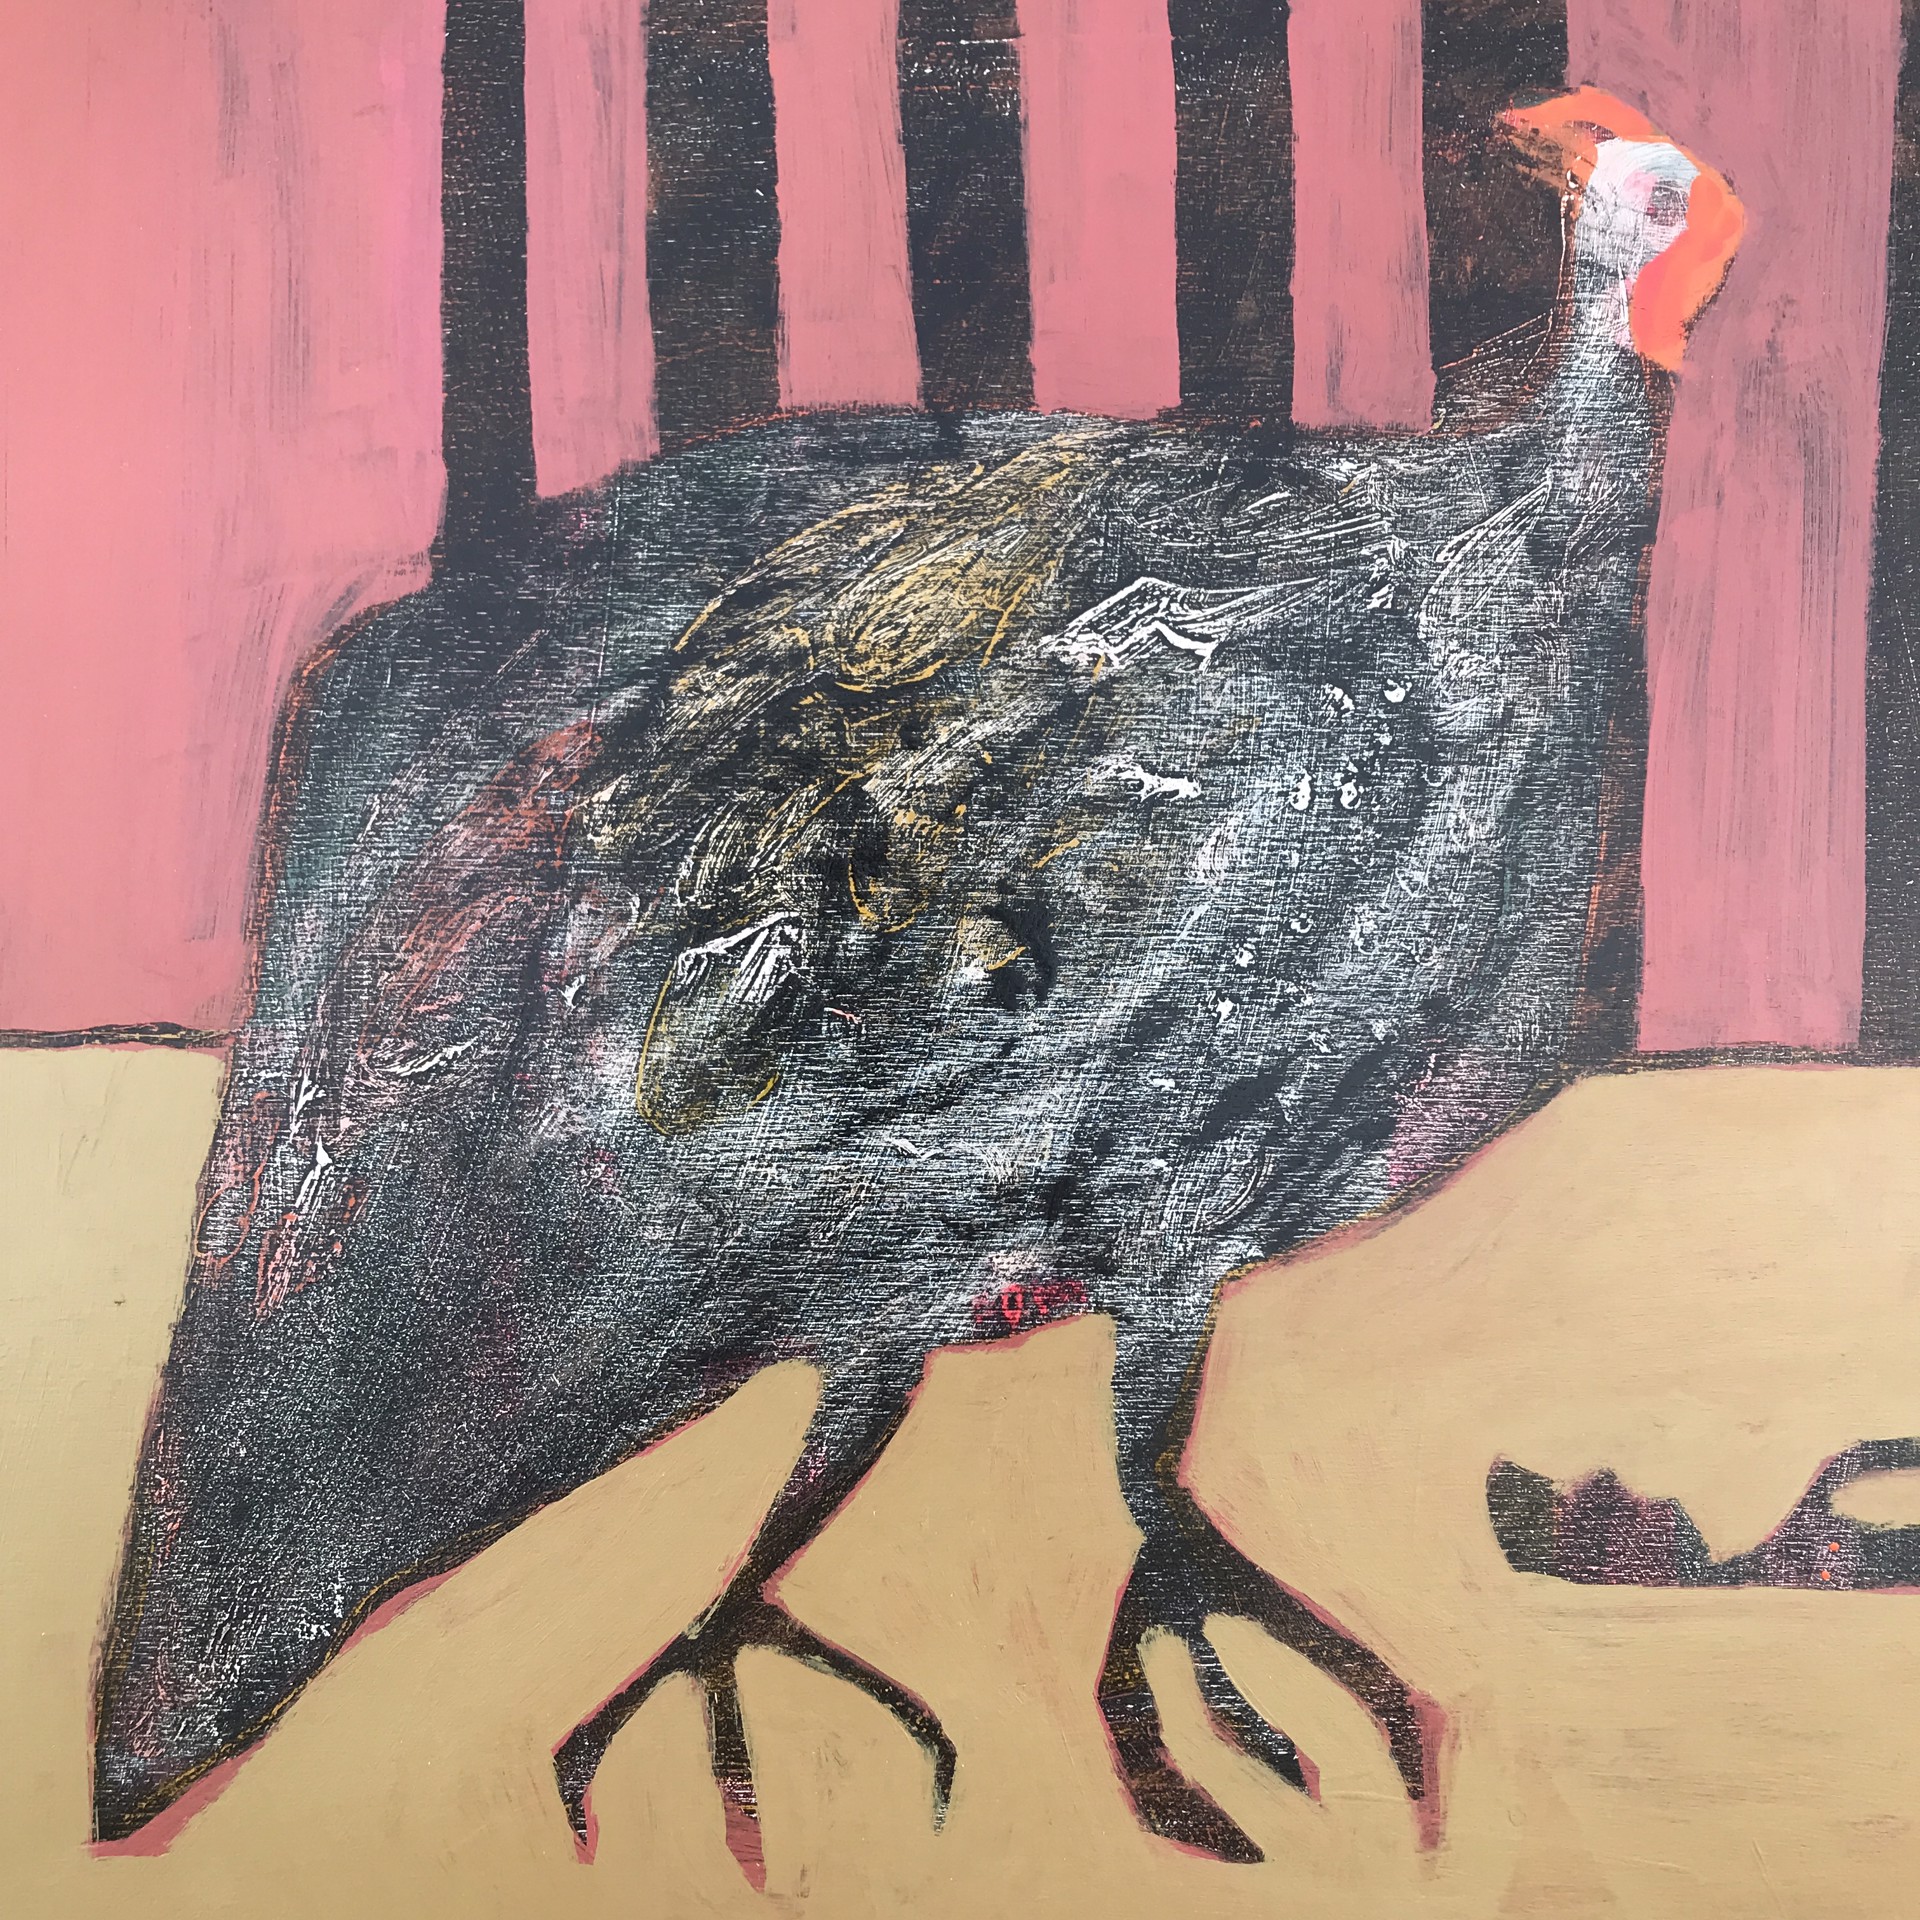 Vulture by Rachael Van Dyke